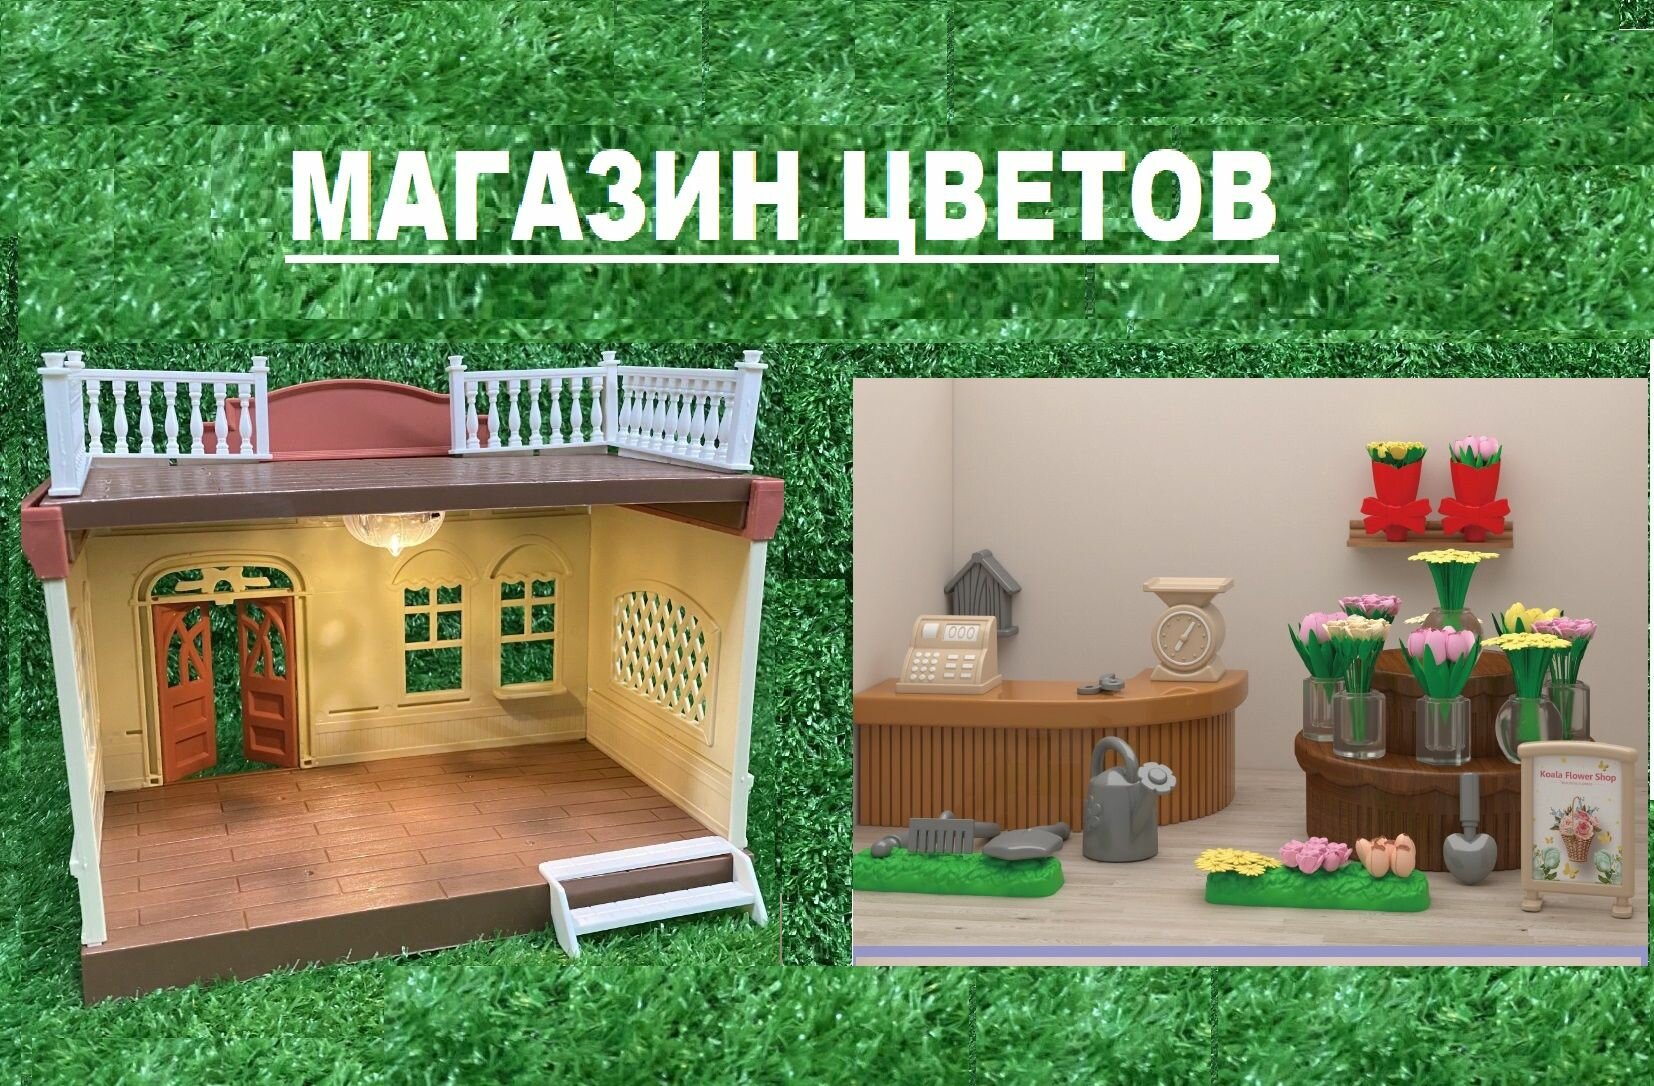 Терраса для кукольного дома со светом: цветочный магазин с садовой мебелью и цветами, новый игровой набор Santomle families